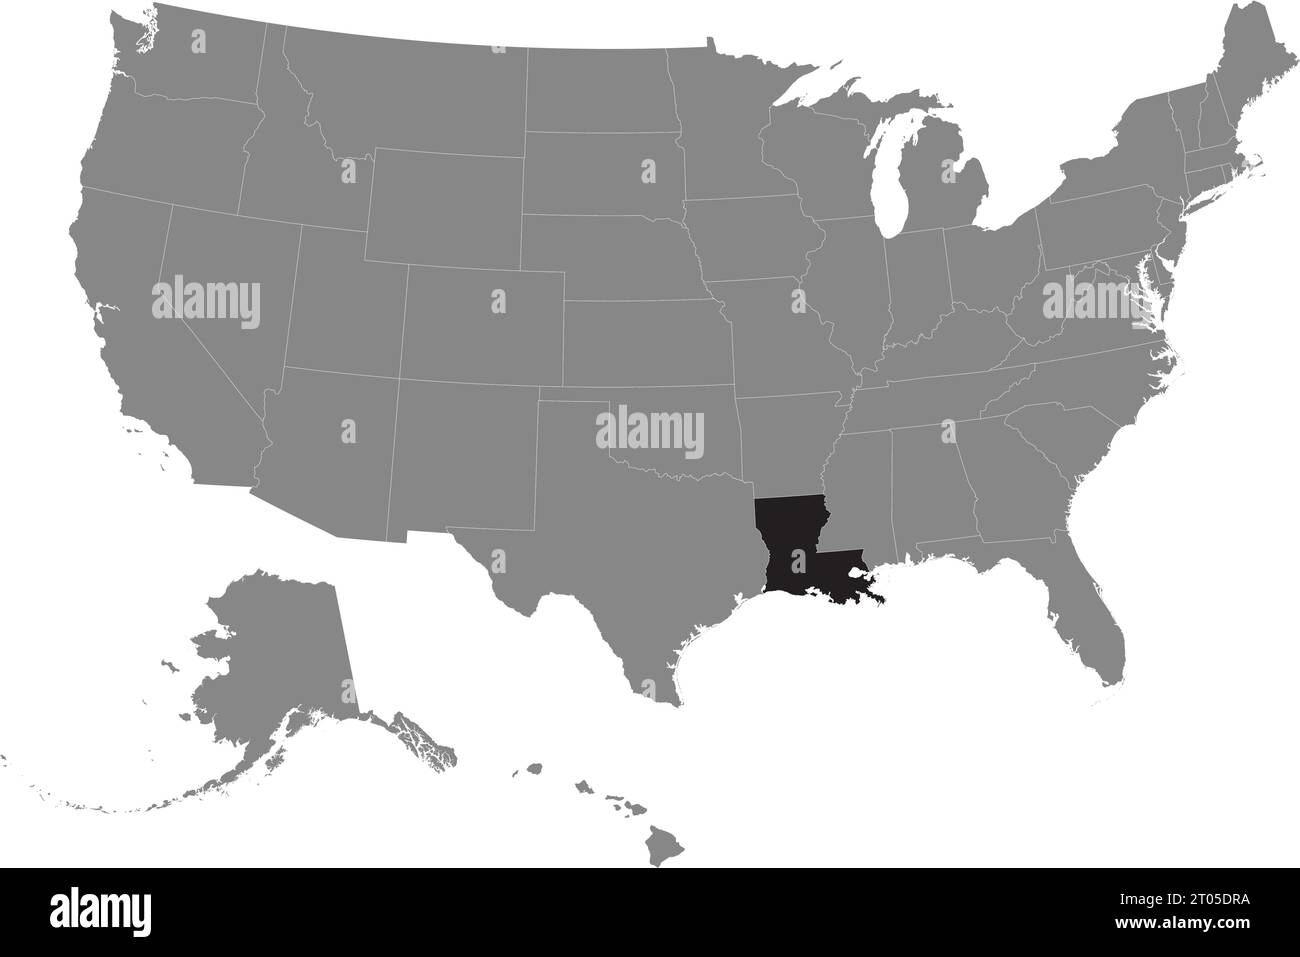 Carte fédérale CMJN noire de LA LOUISIANE à l'intérieur de la carte politique blanche grise détaillée des États-Unis d'Amérique sur fond transparent Illustration de Vecteur